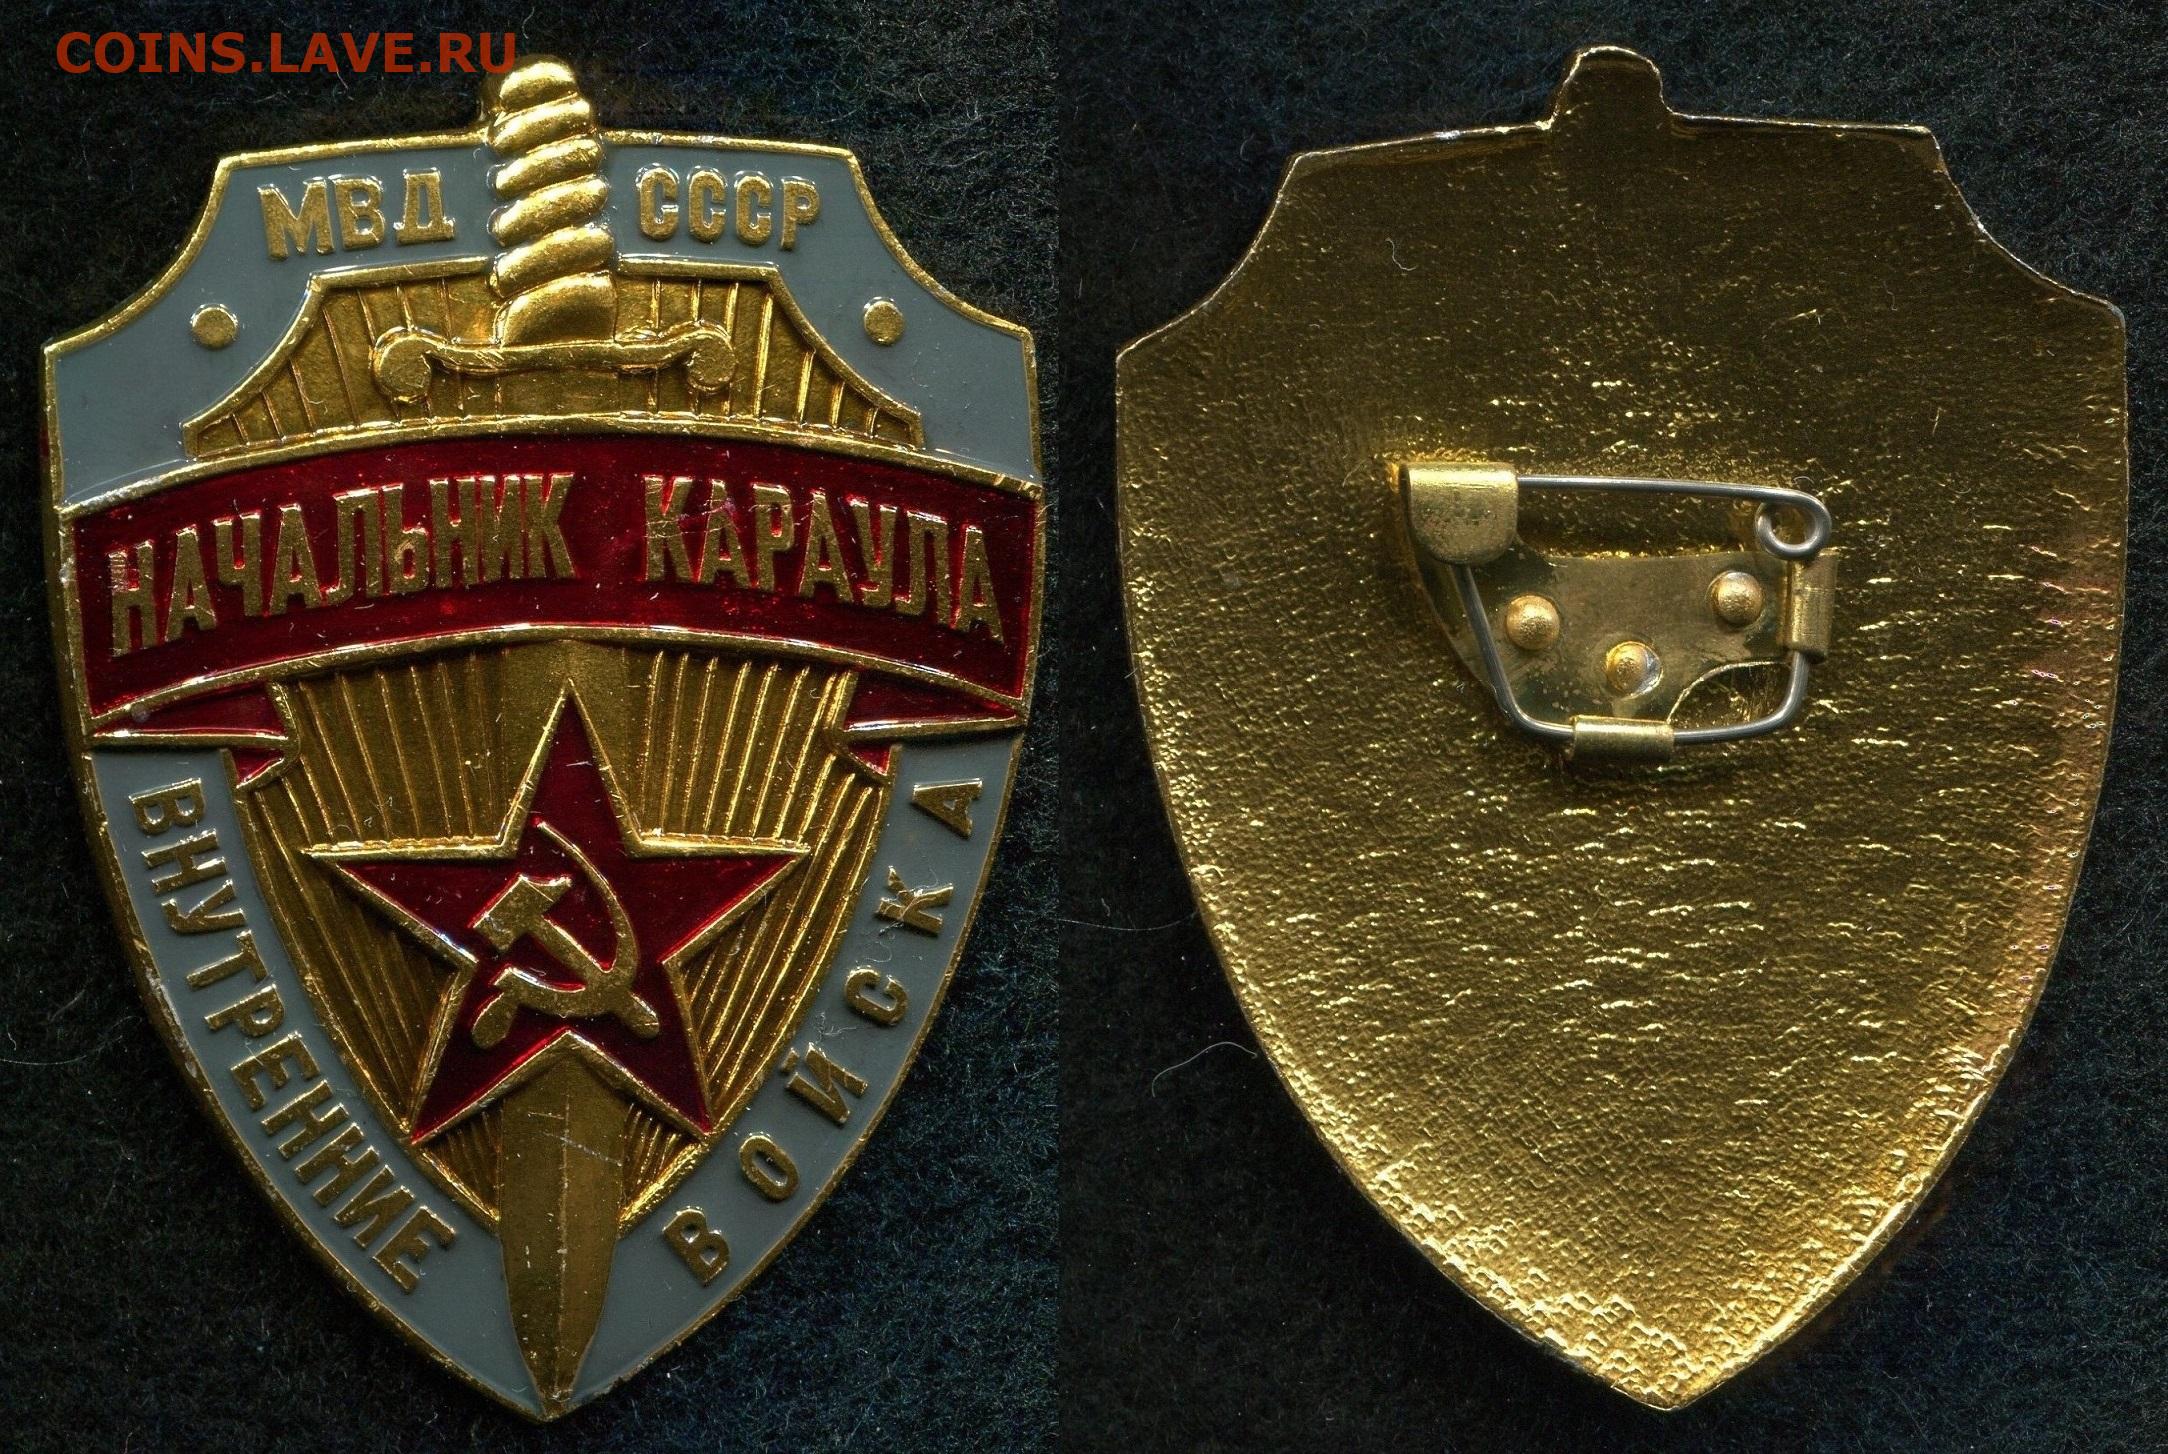 Начальник караула ВВ МВД СССР